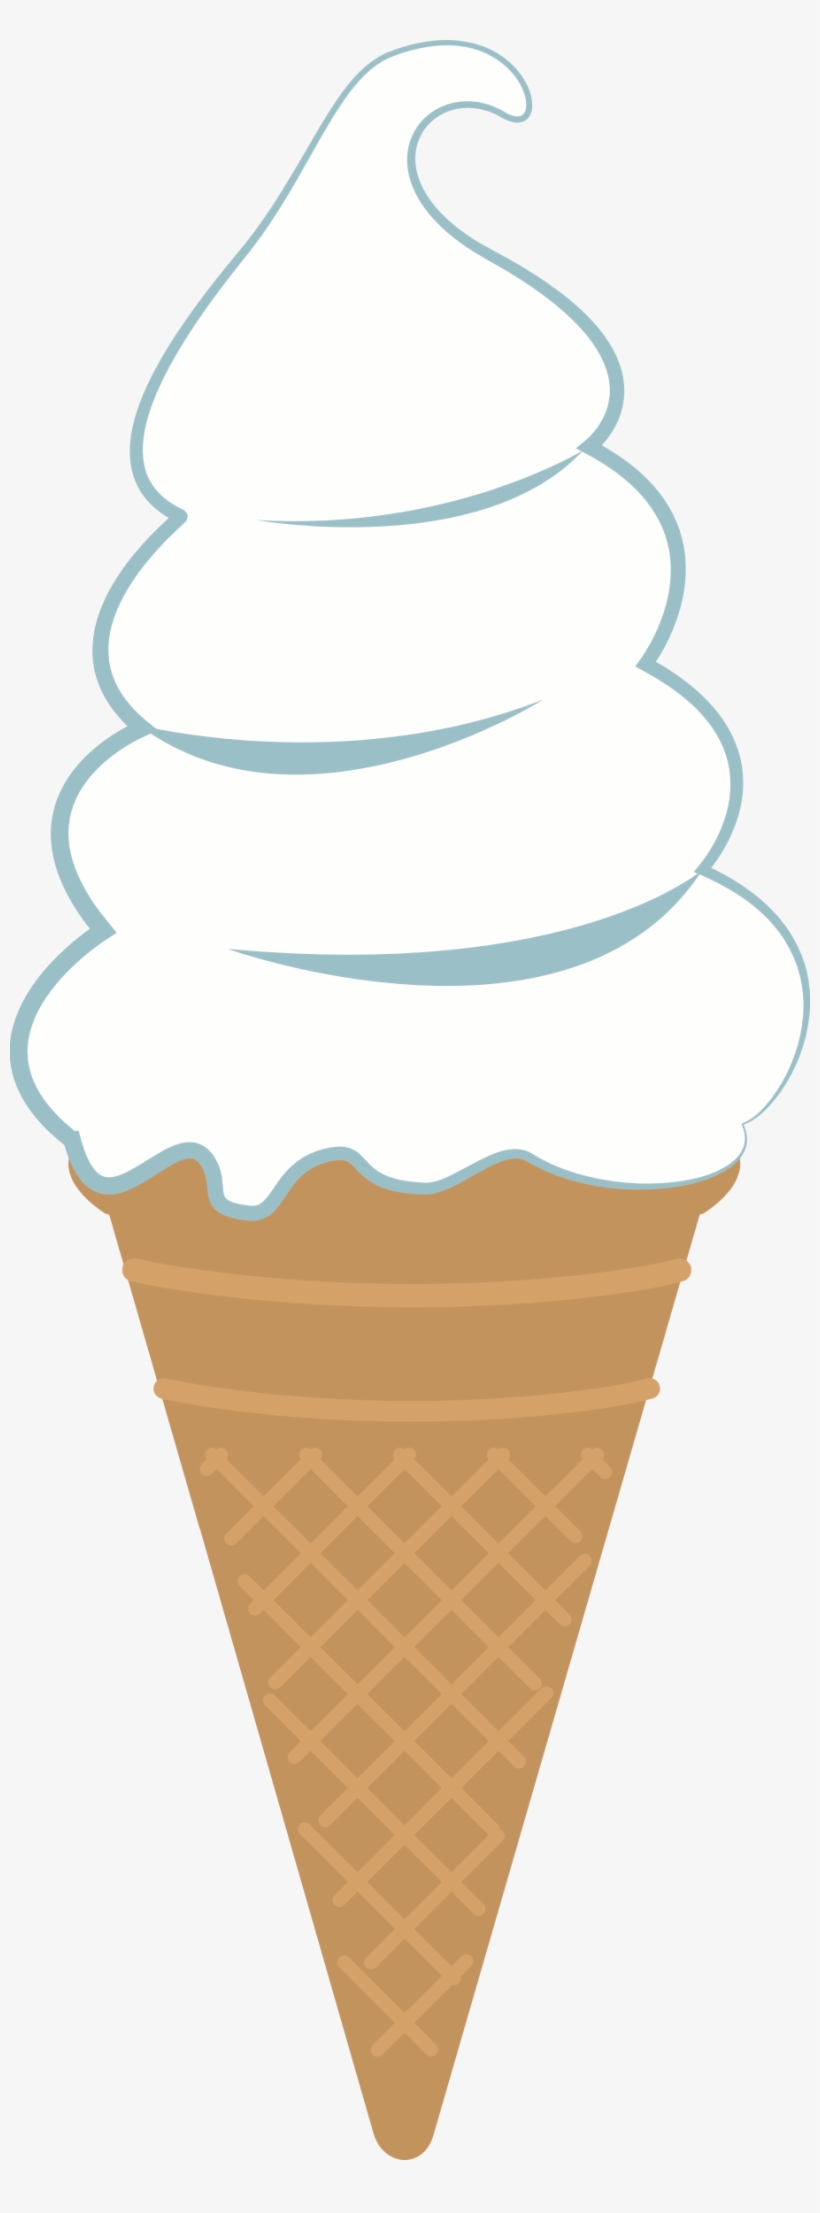 Big Image - Clip Art Ice Cream Cone, transparent png #8800441